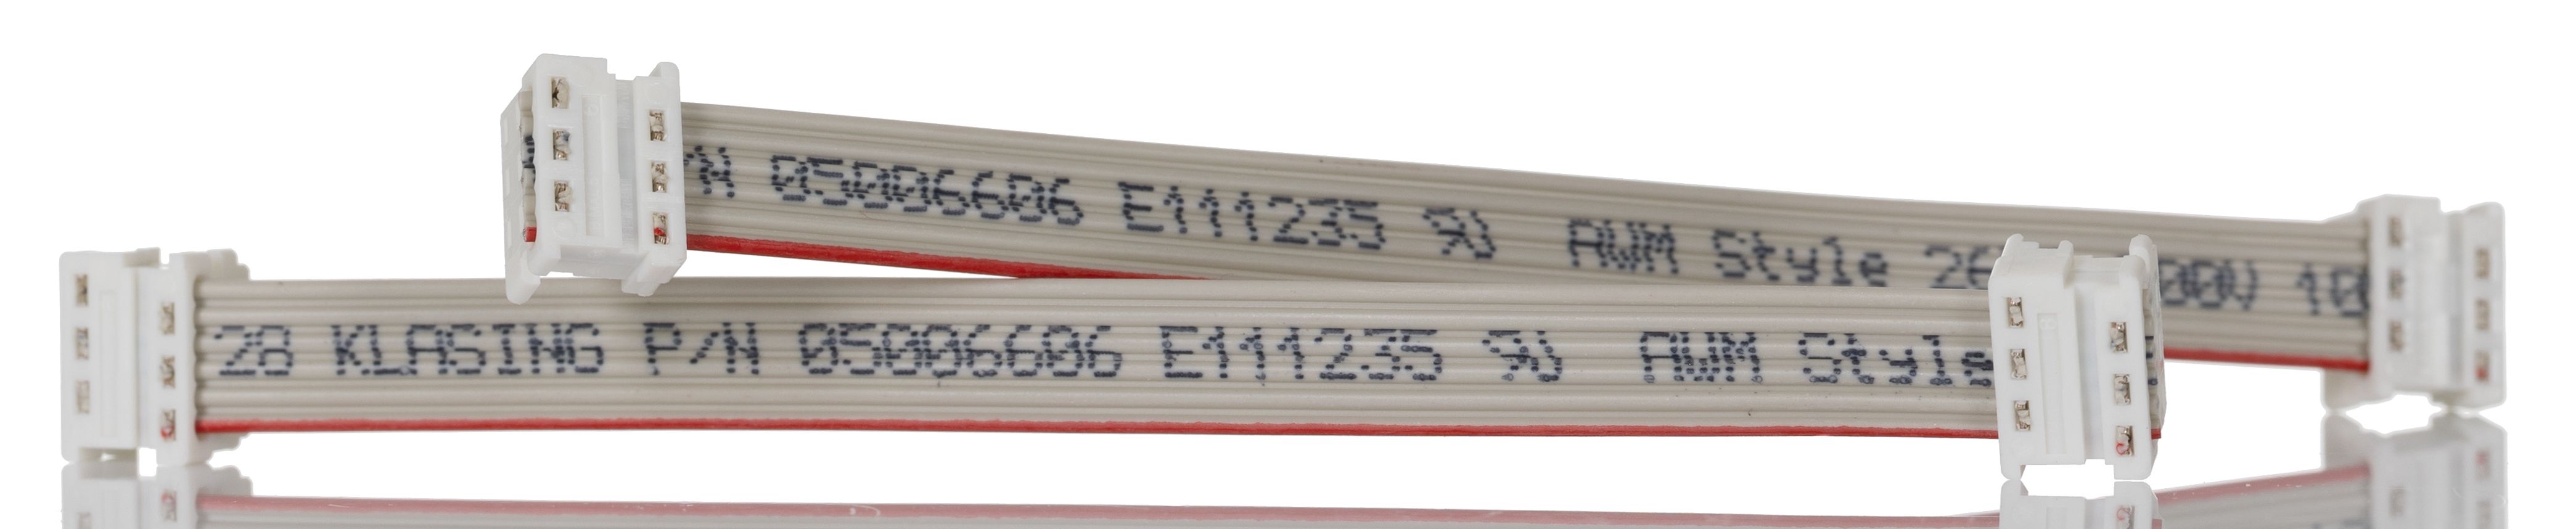 Cable plano Molex Picoflex de 6 conductores, paso 1.27mm, long. 150mm, con. A: Hembra, con. B: Hembra